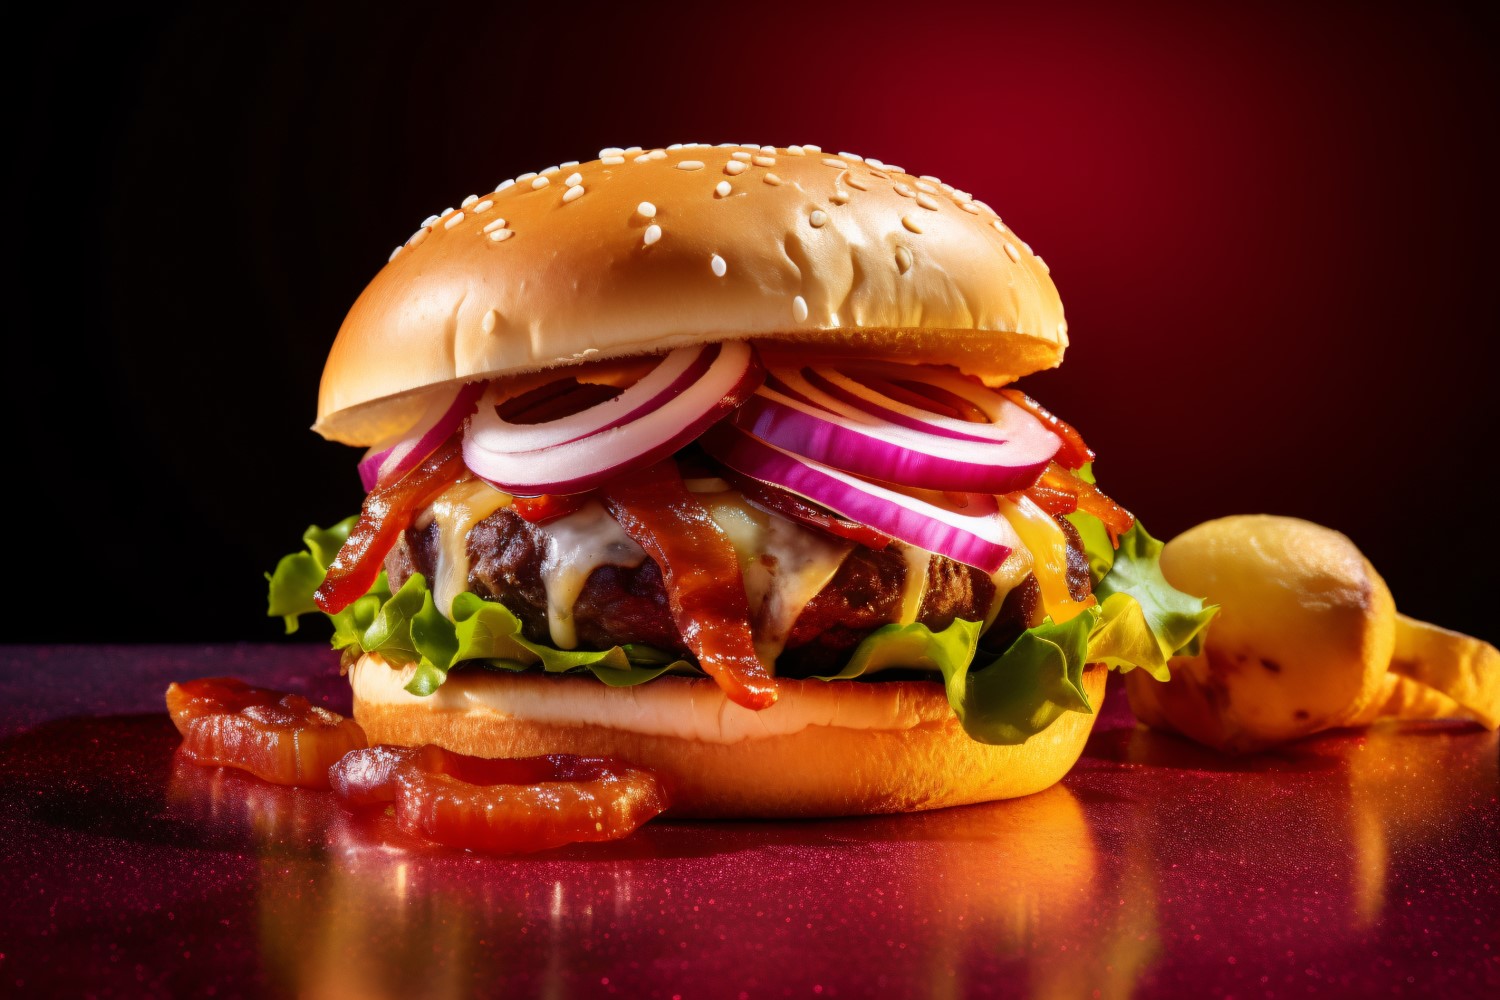 Hot hamburger, Bacon burger with beef patty 116